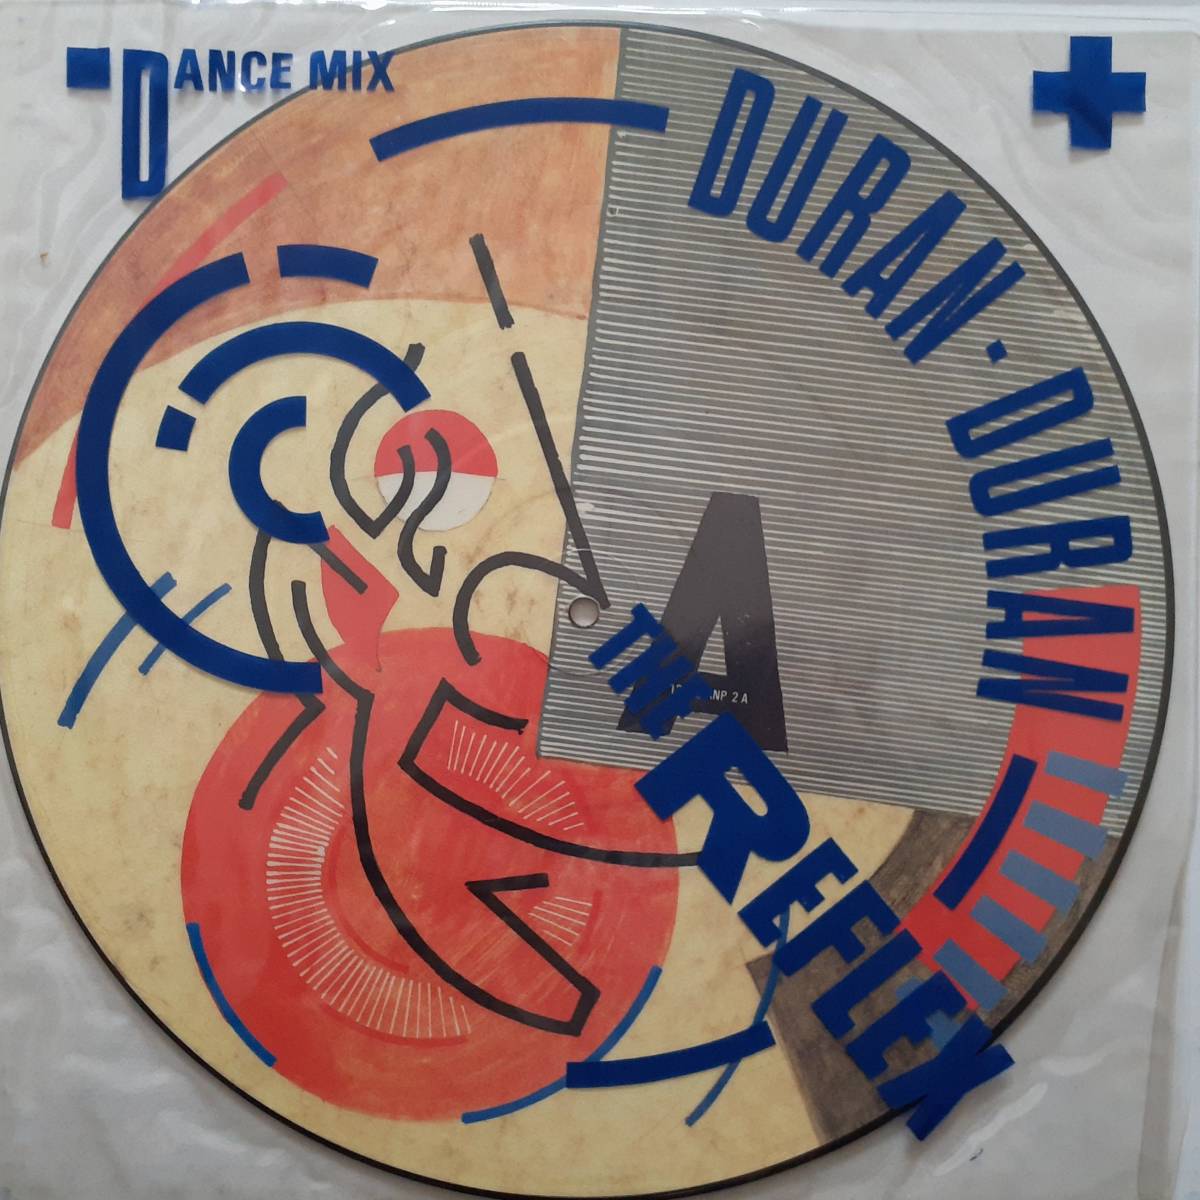 Duran Duran　デュラン・デュラン　The Reflex (Dance Mix)　1984年 UK盤 ピクチャーディスク仕様 12” シングルレコード_画像1